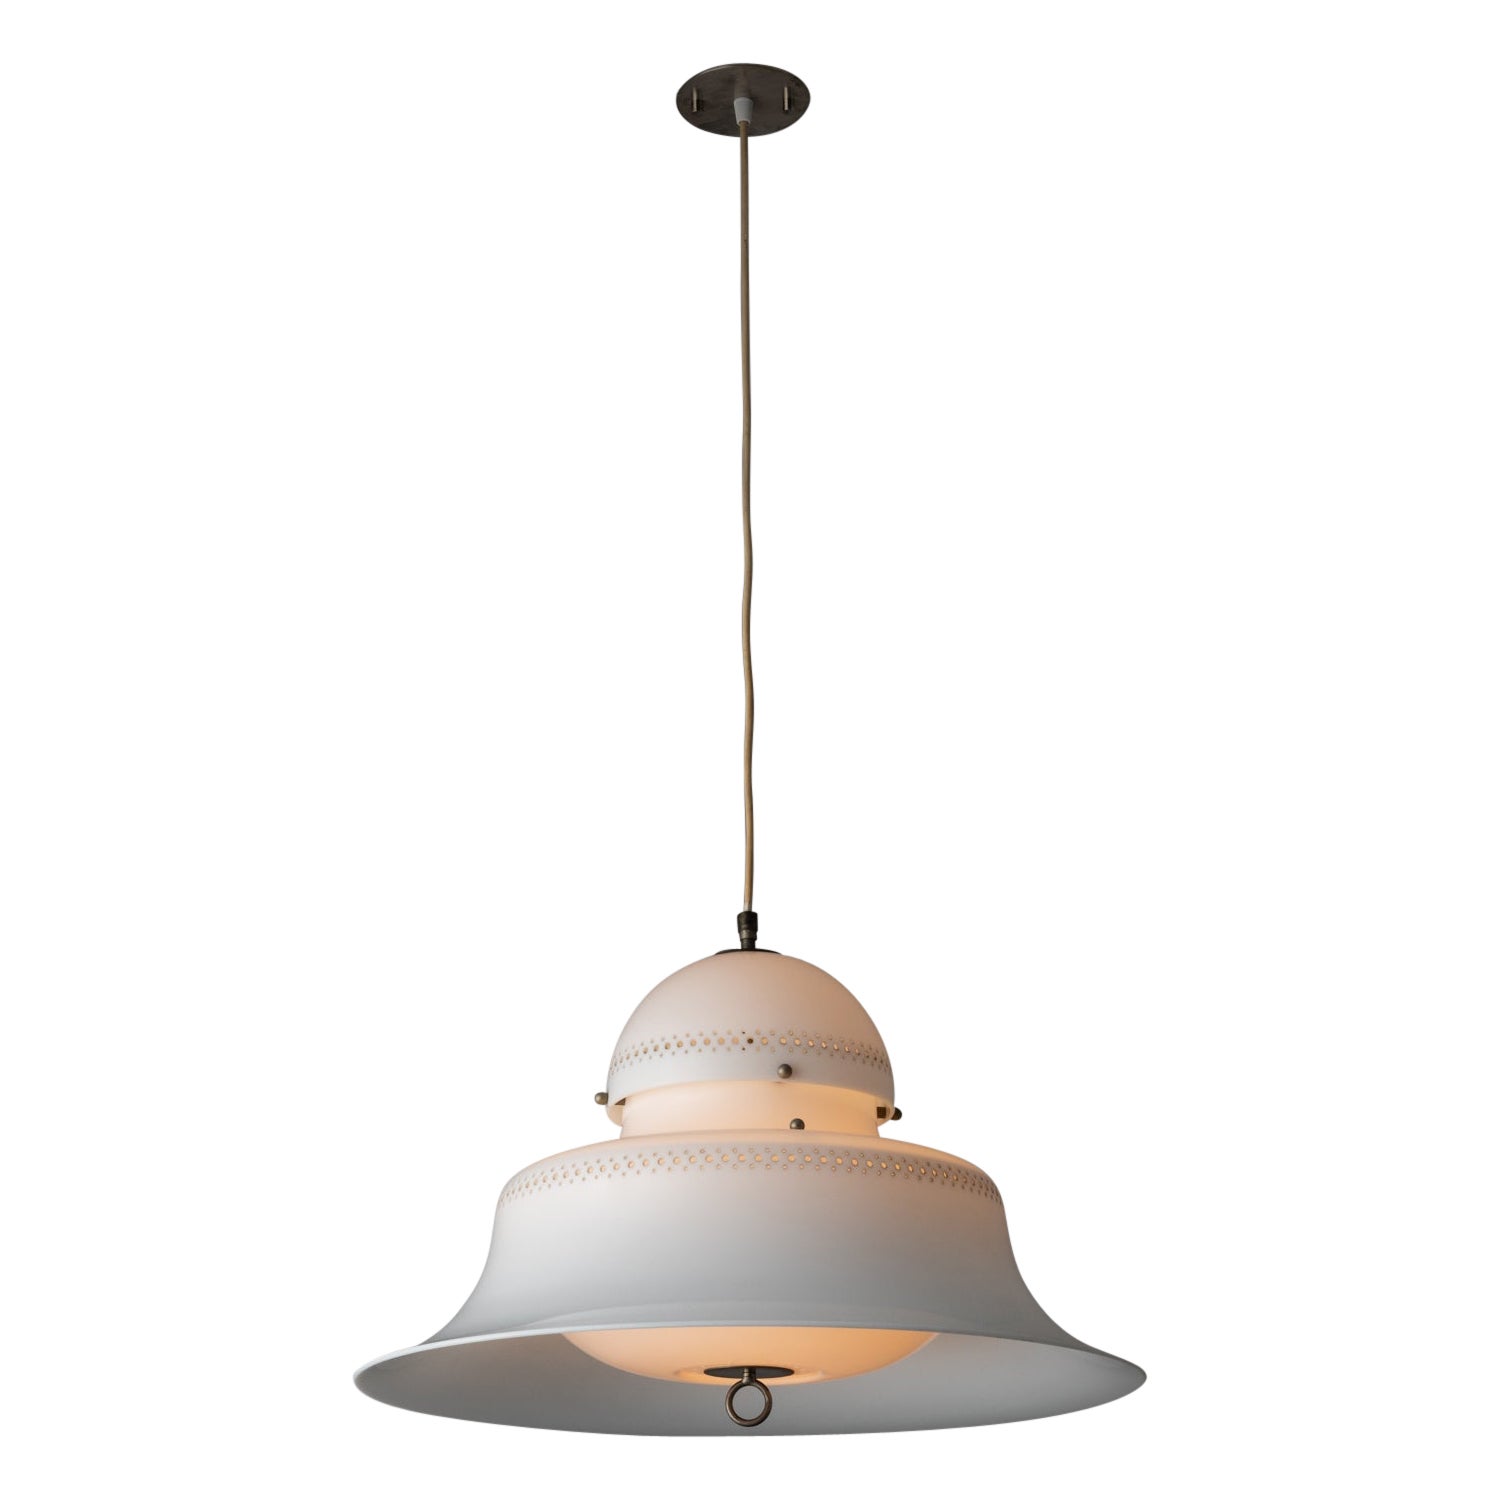 Model KD14 Ceiling Light by Sergio Asti for Kartell